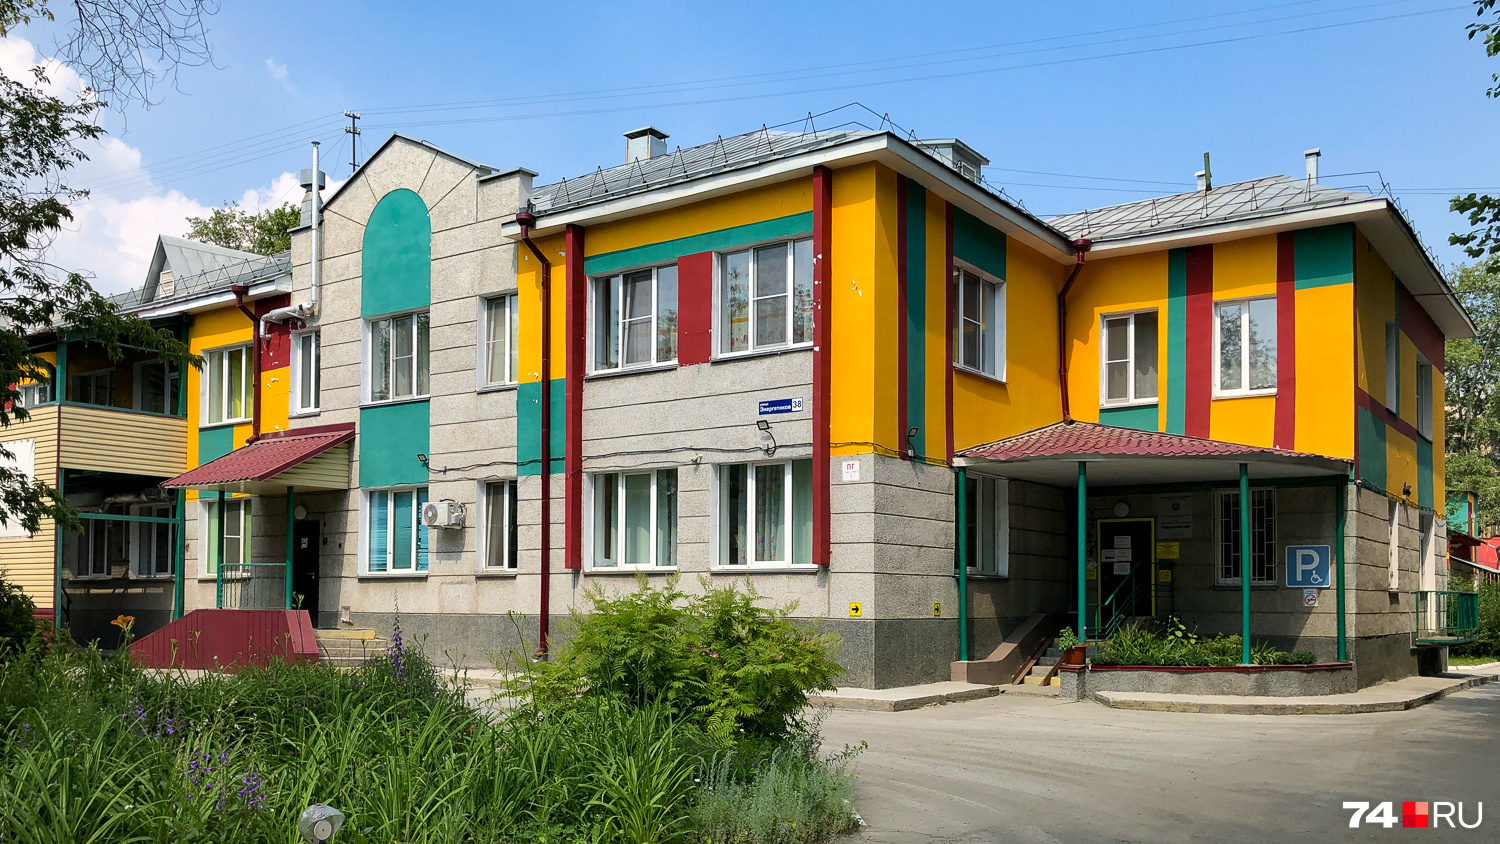 Старые дома не выглядят в Ленинском районе брошенными. Рядом видны новые или обновленные постройки, как этот (хотел написать детский сад), но оказалось, центр медицинской реабилитации